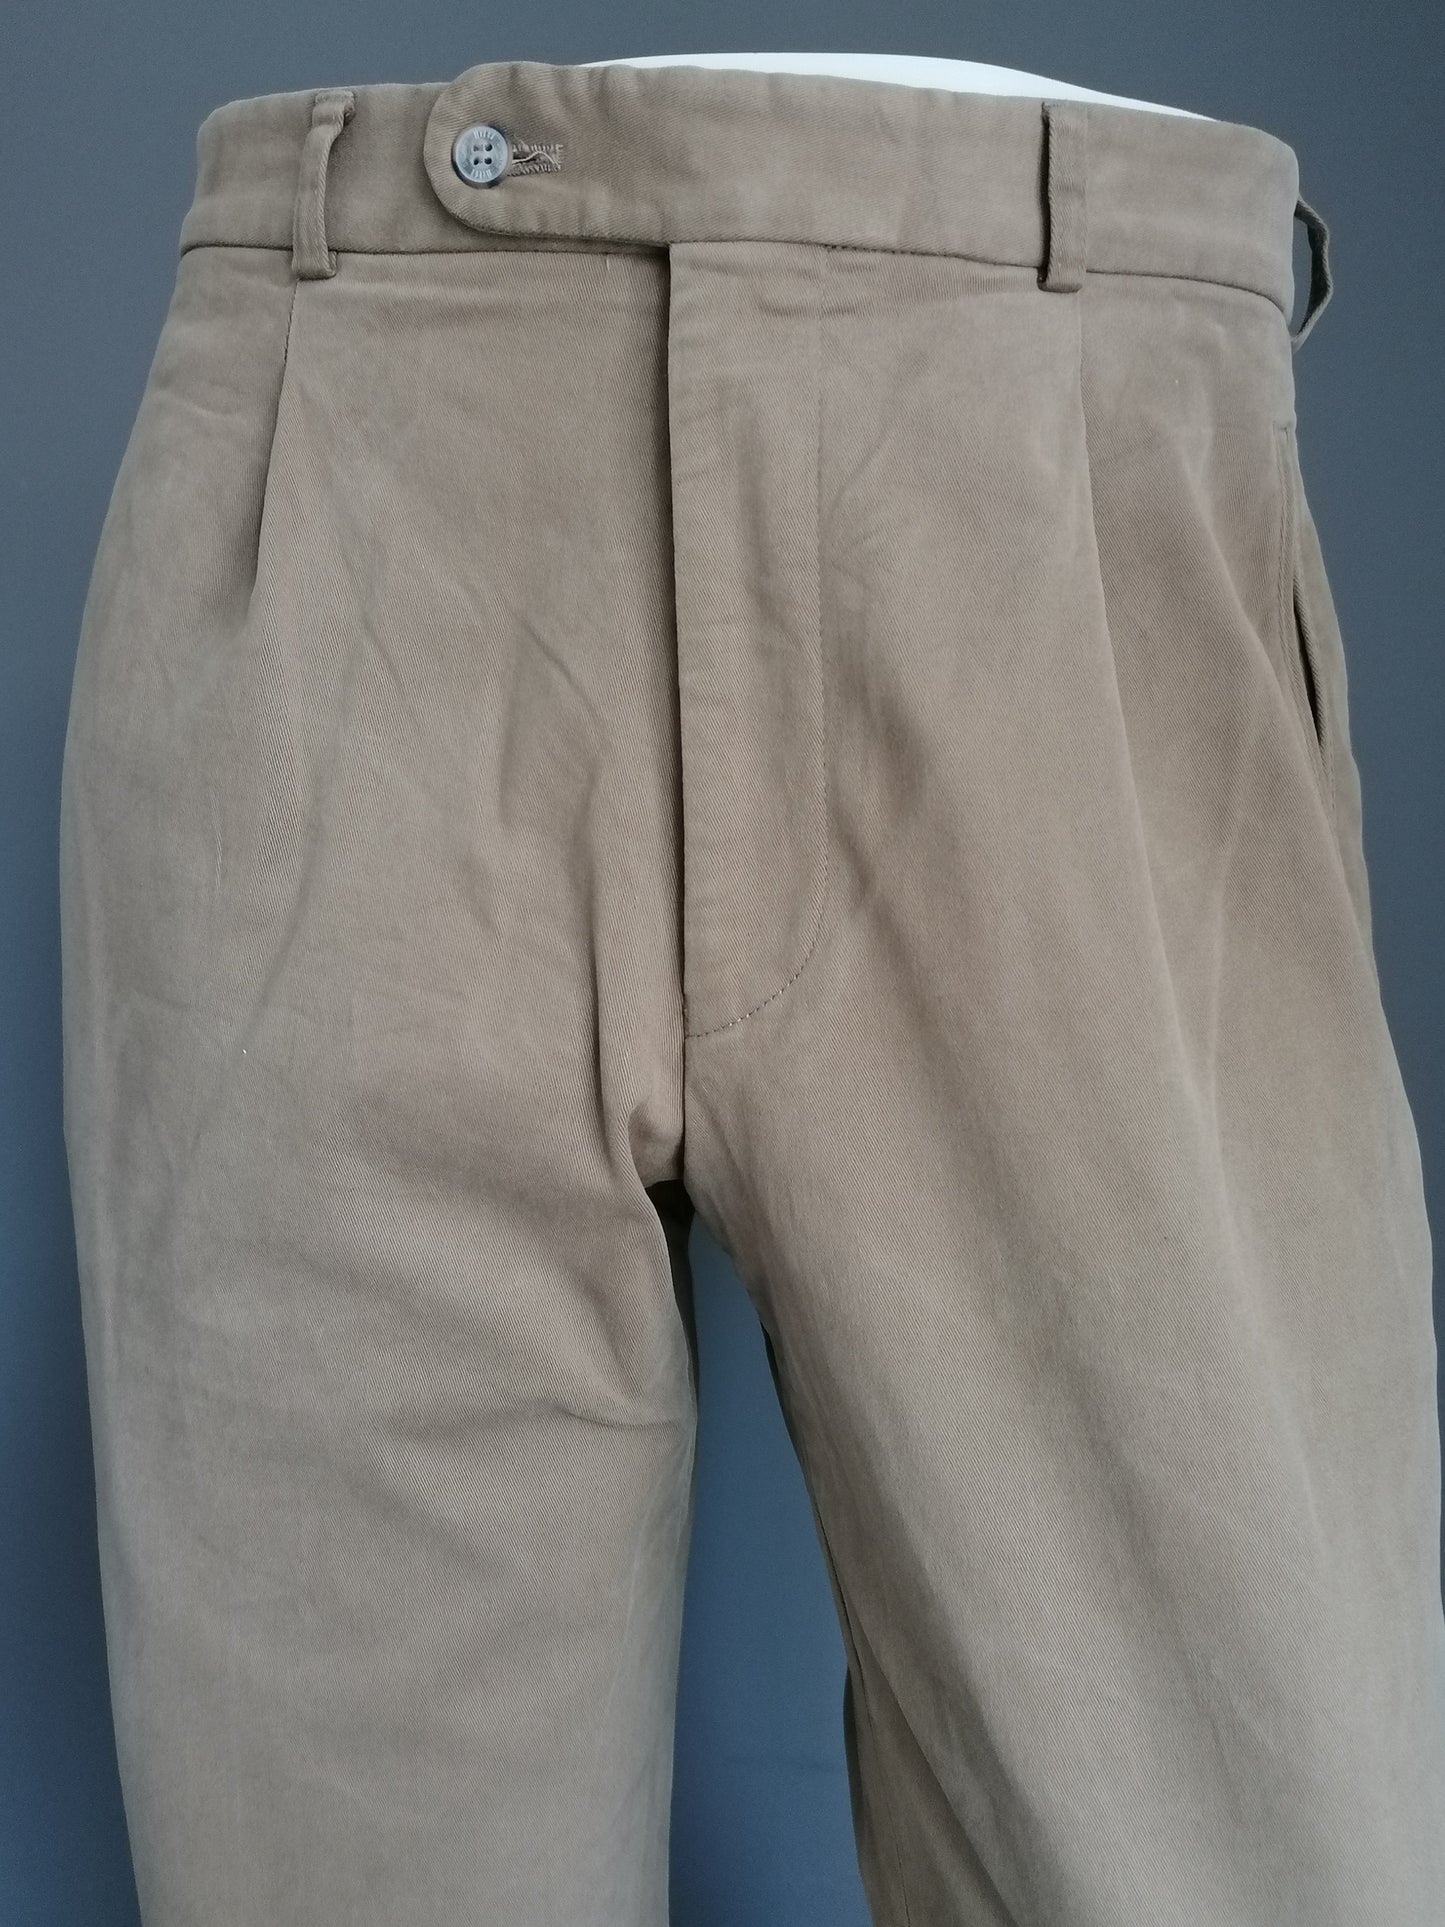 HILTL PANTS. Beige colored. Size 52 / L